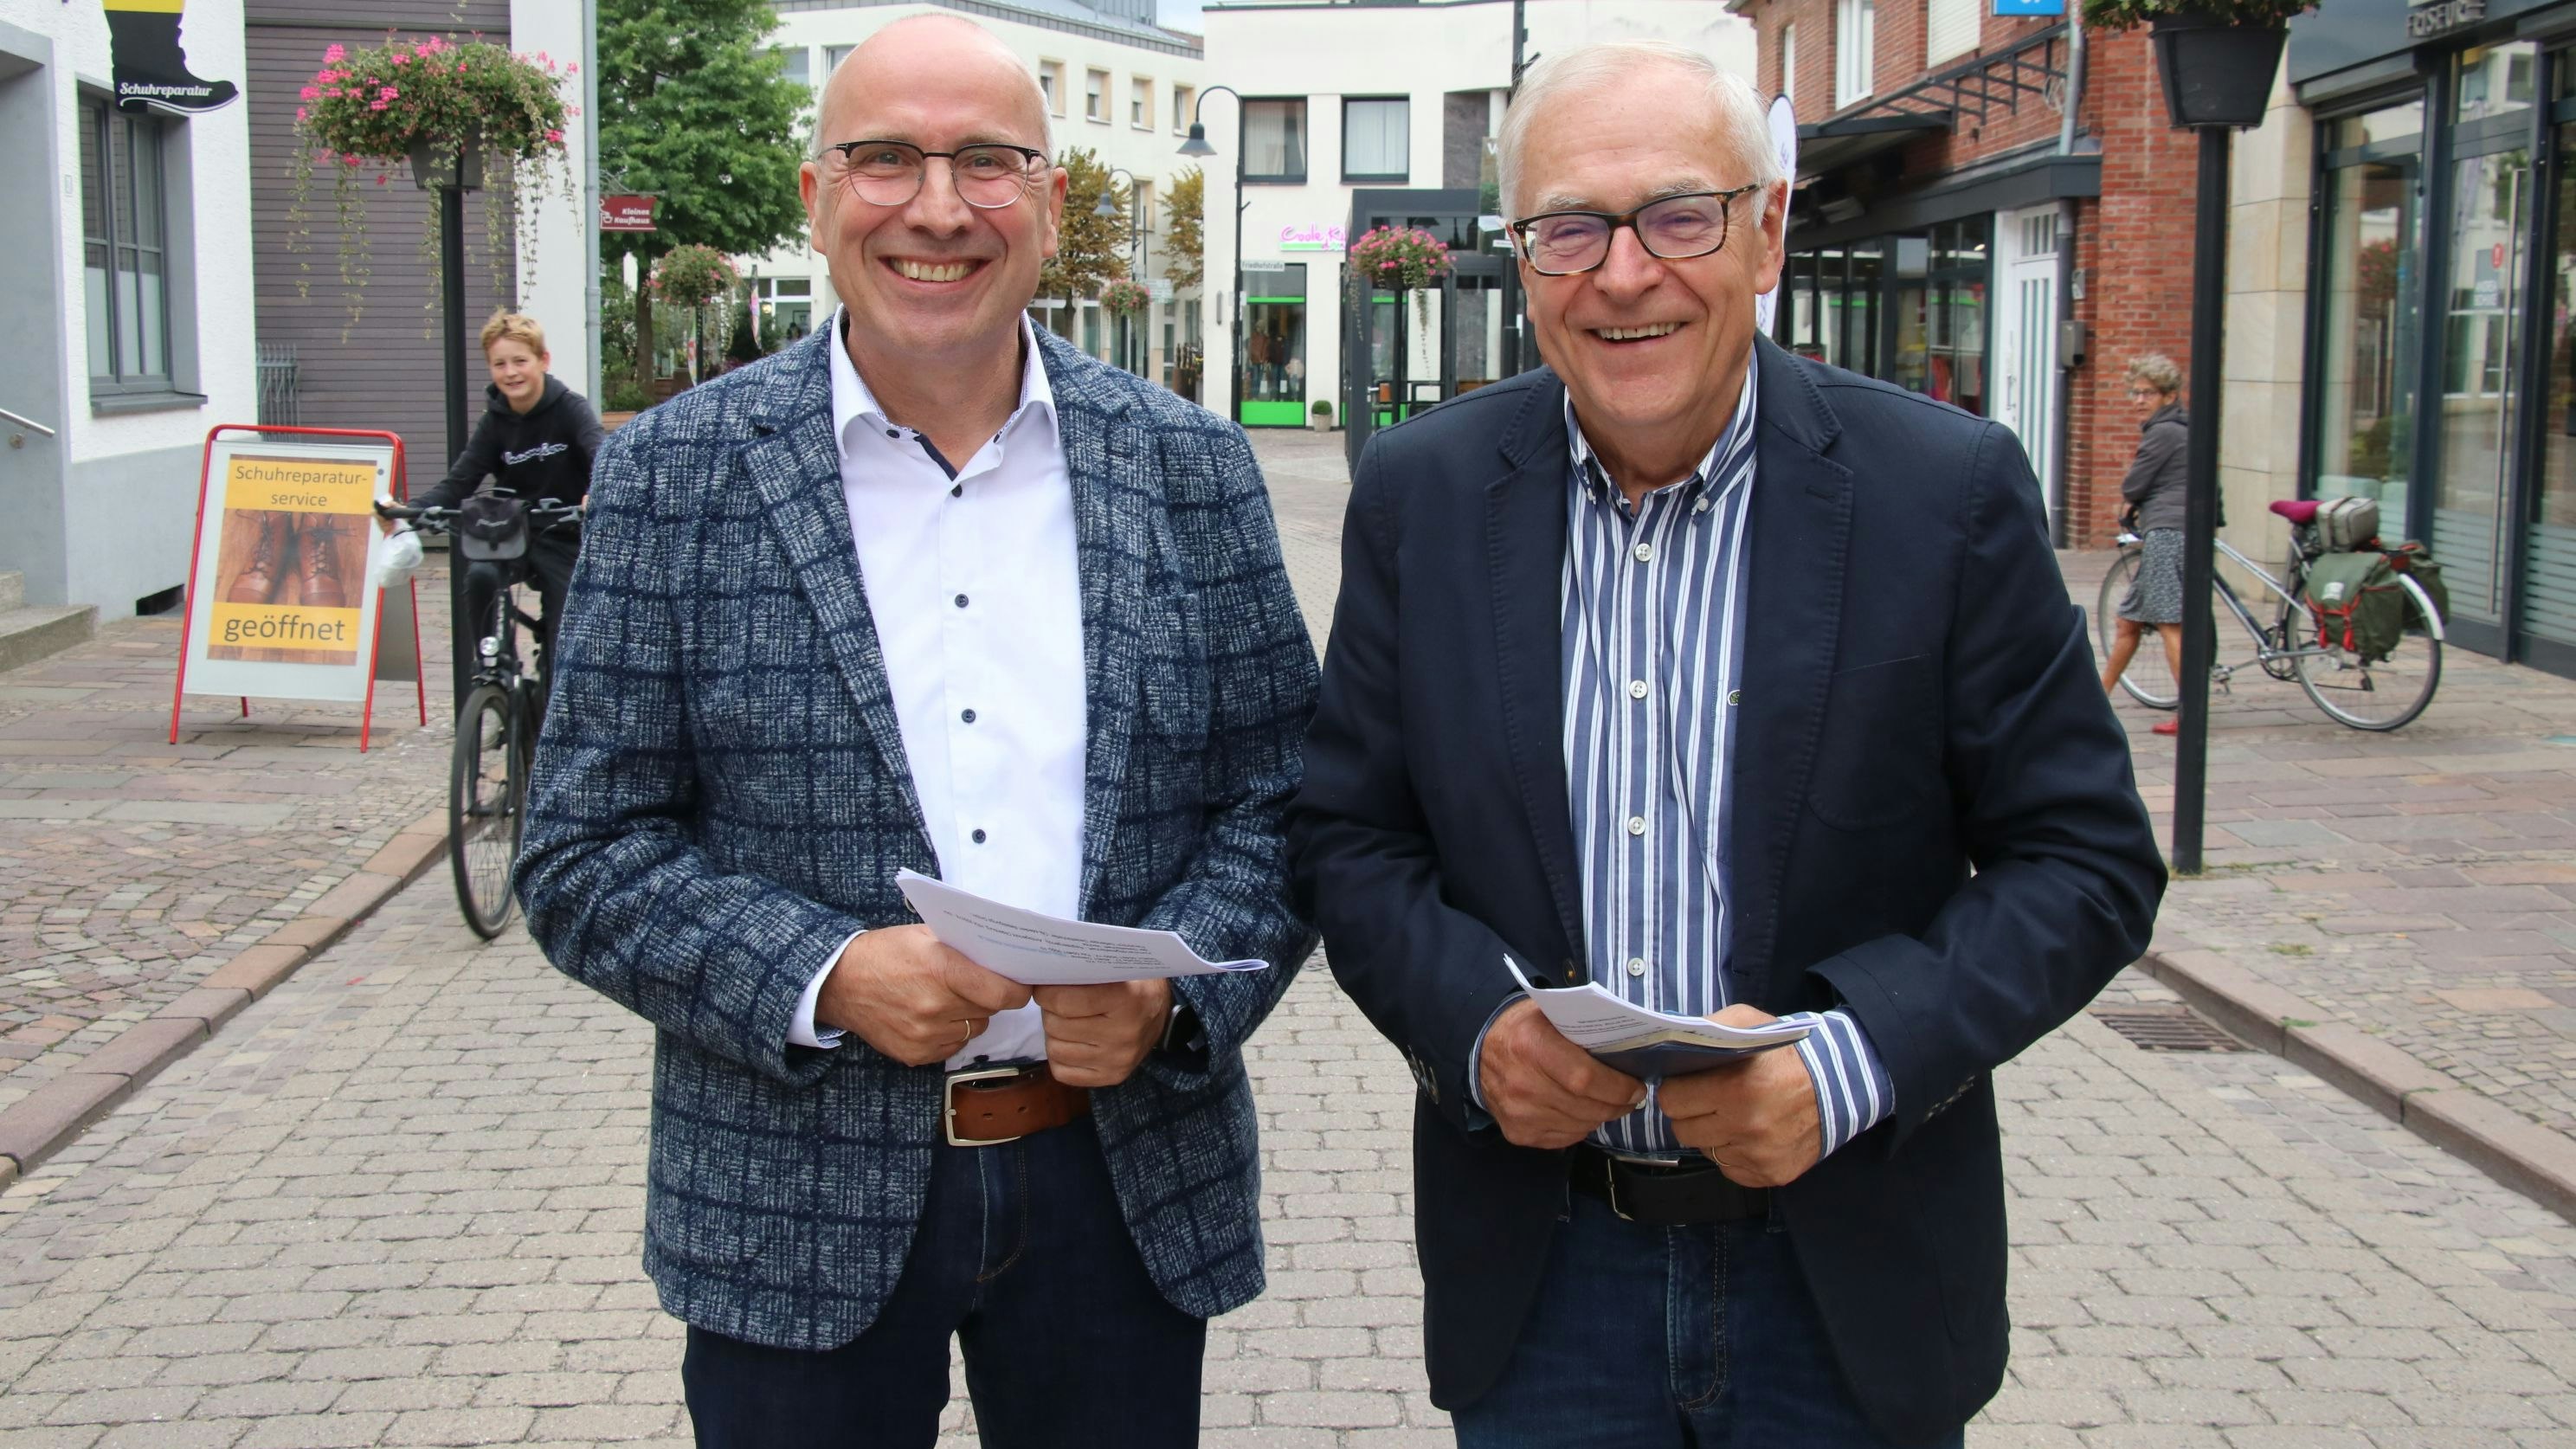 Optimistisch: Gerd Muhle (links) und sein Vorgänger als Vorsitzender, Hans-Georg Knappik, blicken optimistisch in die Zukunft der Dammer Bürgerstiftung. Sie wissen aber auch um die großen Herausforderungen. Foto: Lammert